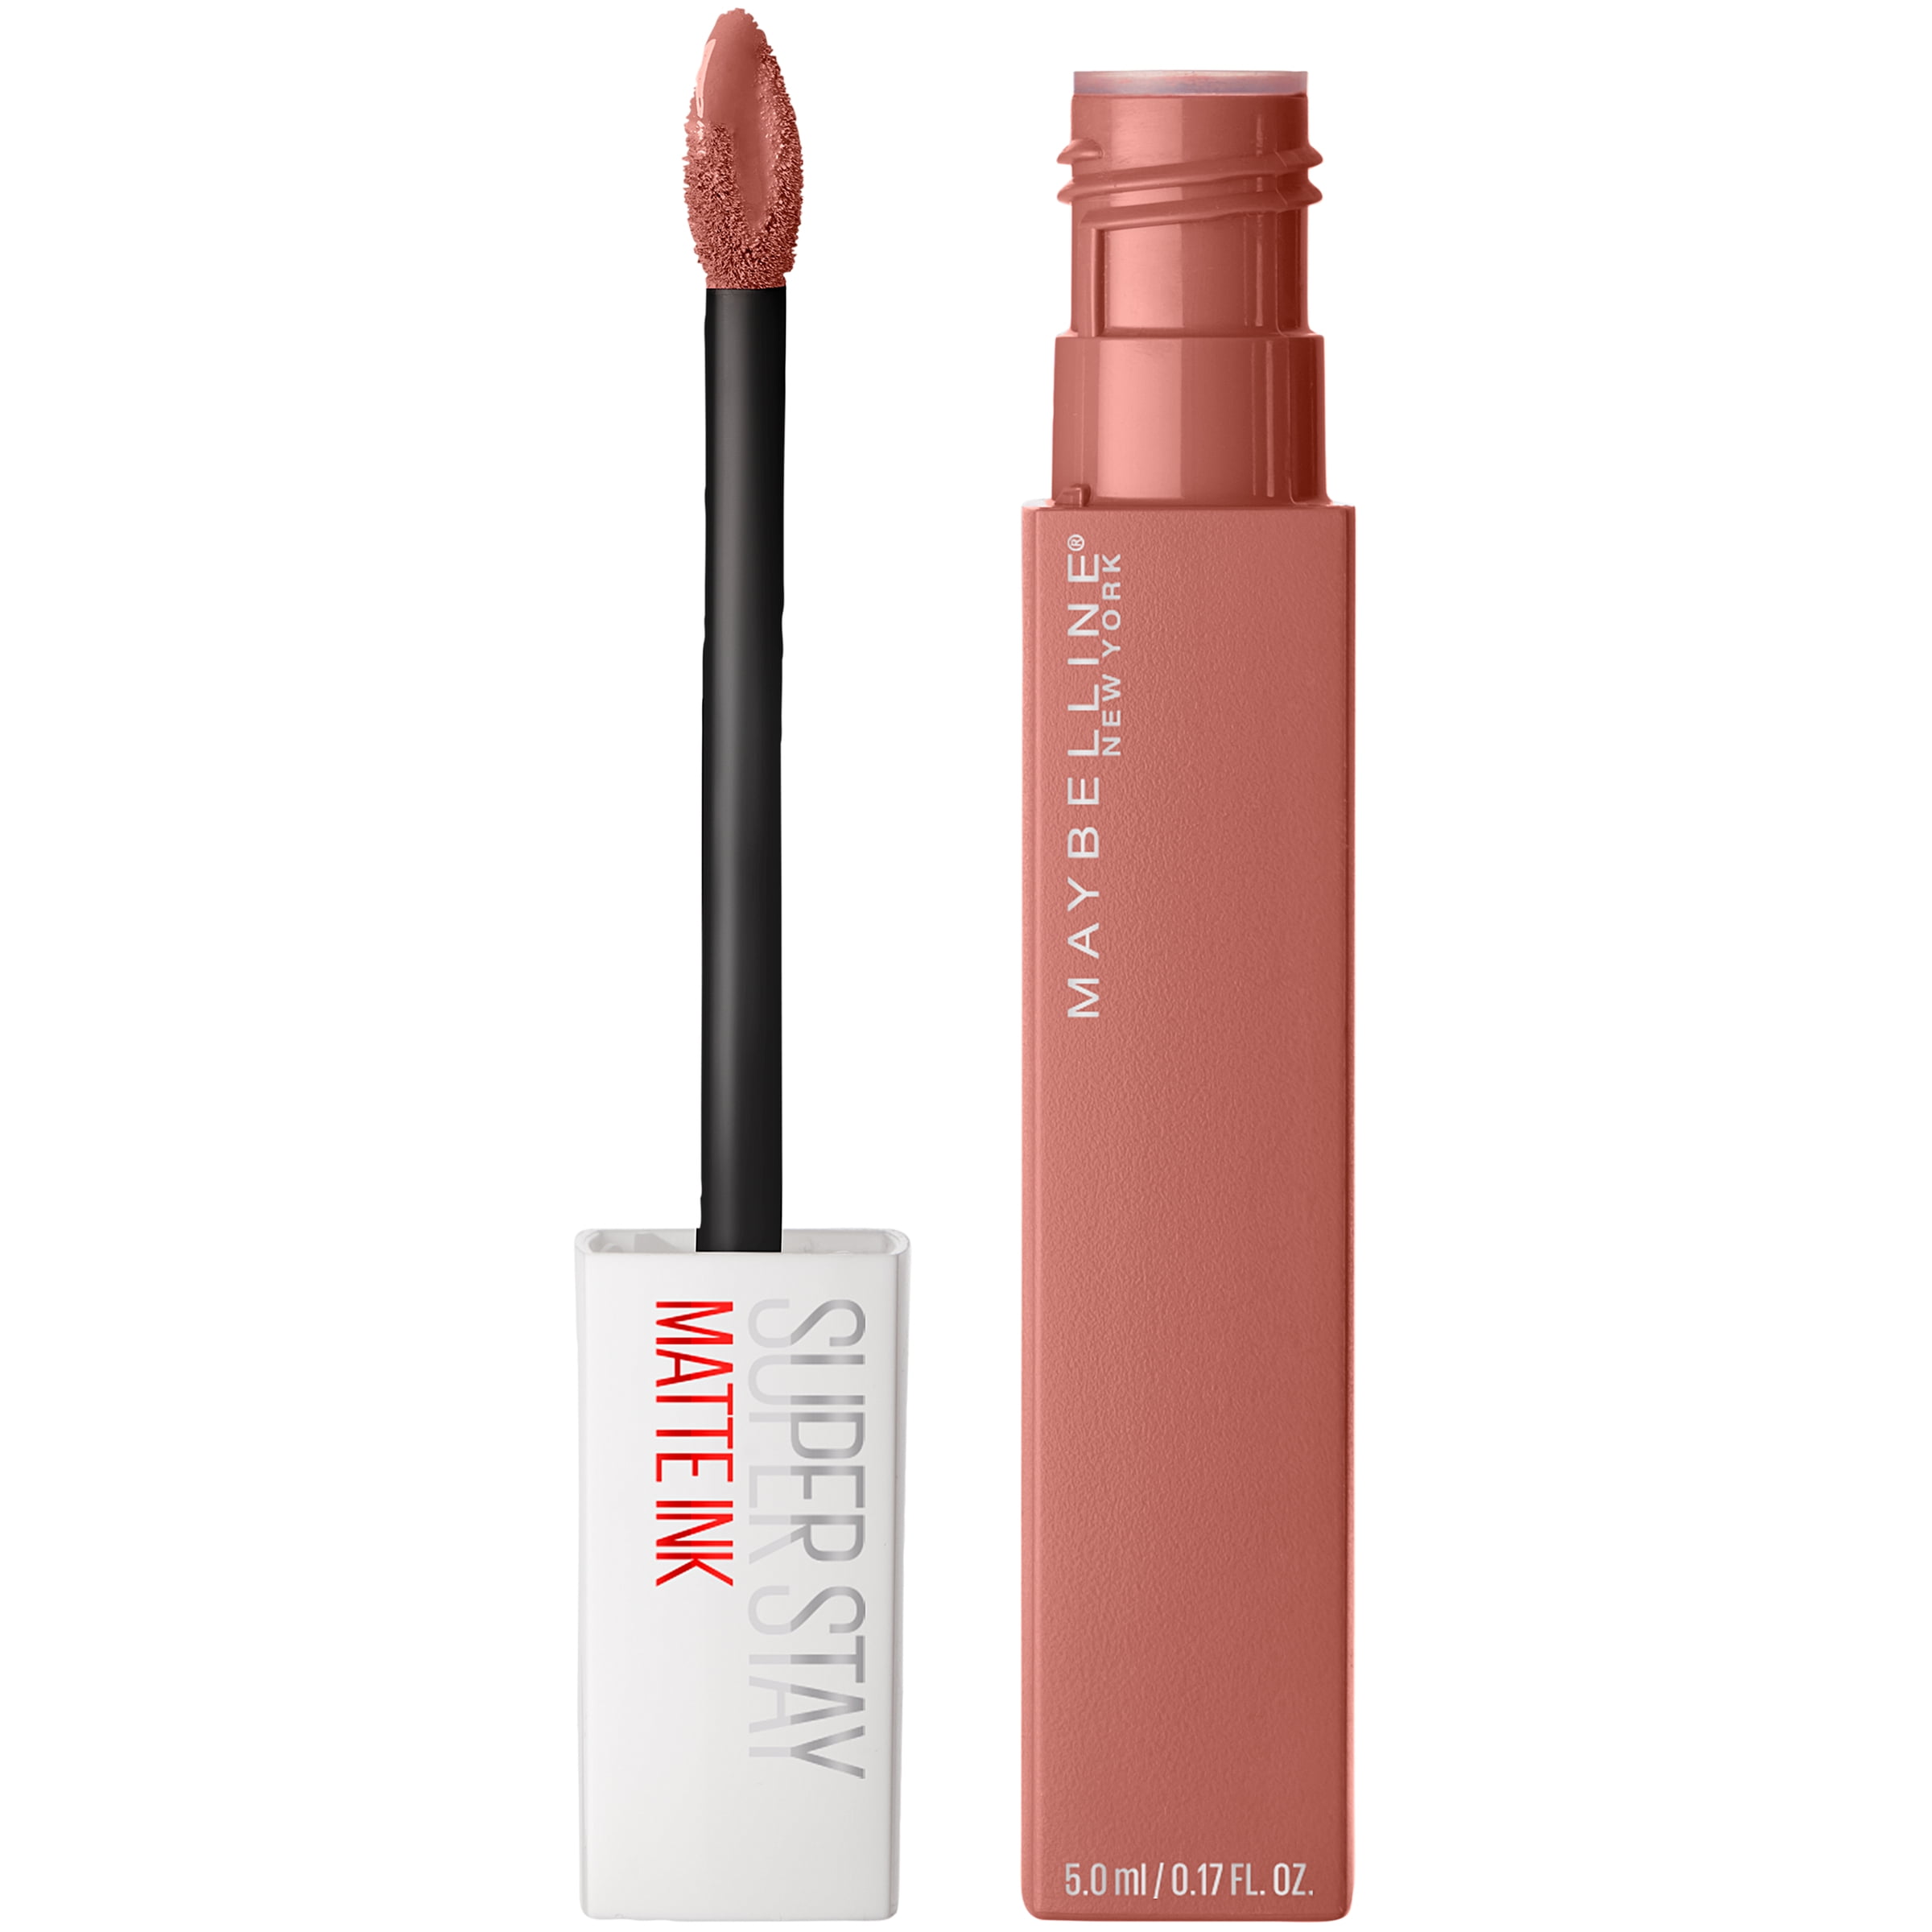 Stay Un-nude Ink Liquid Matte Lipstick, Super Maybelline Seductress